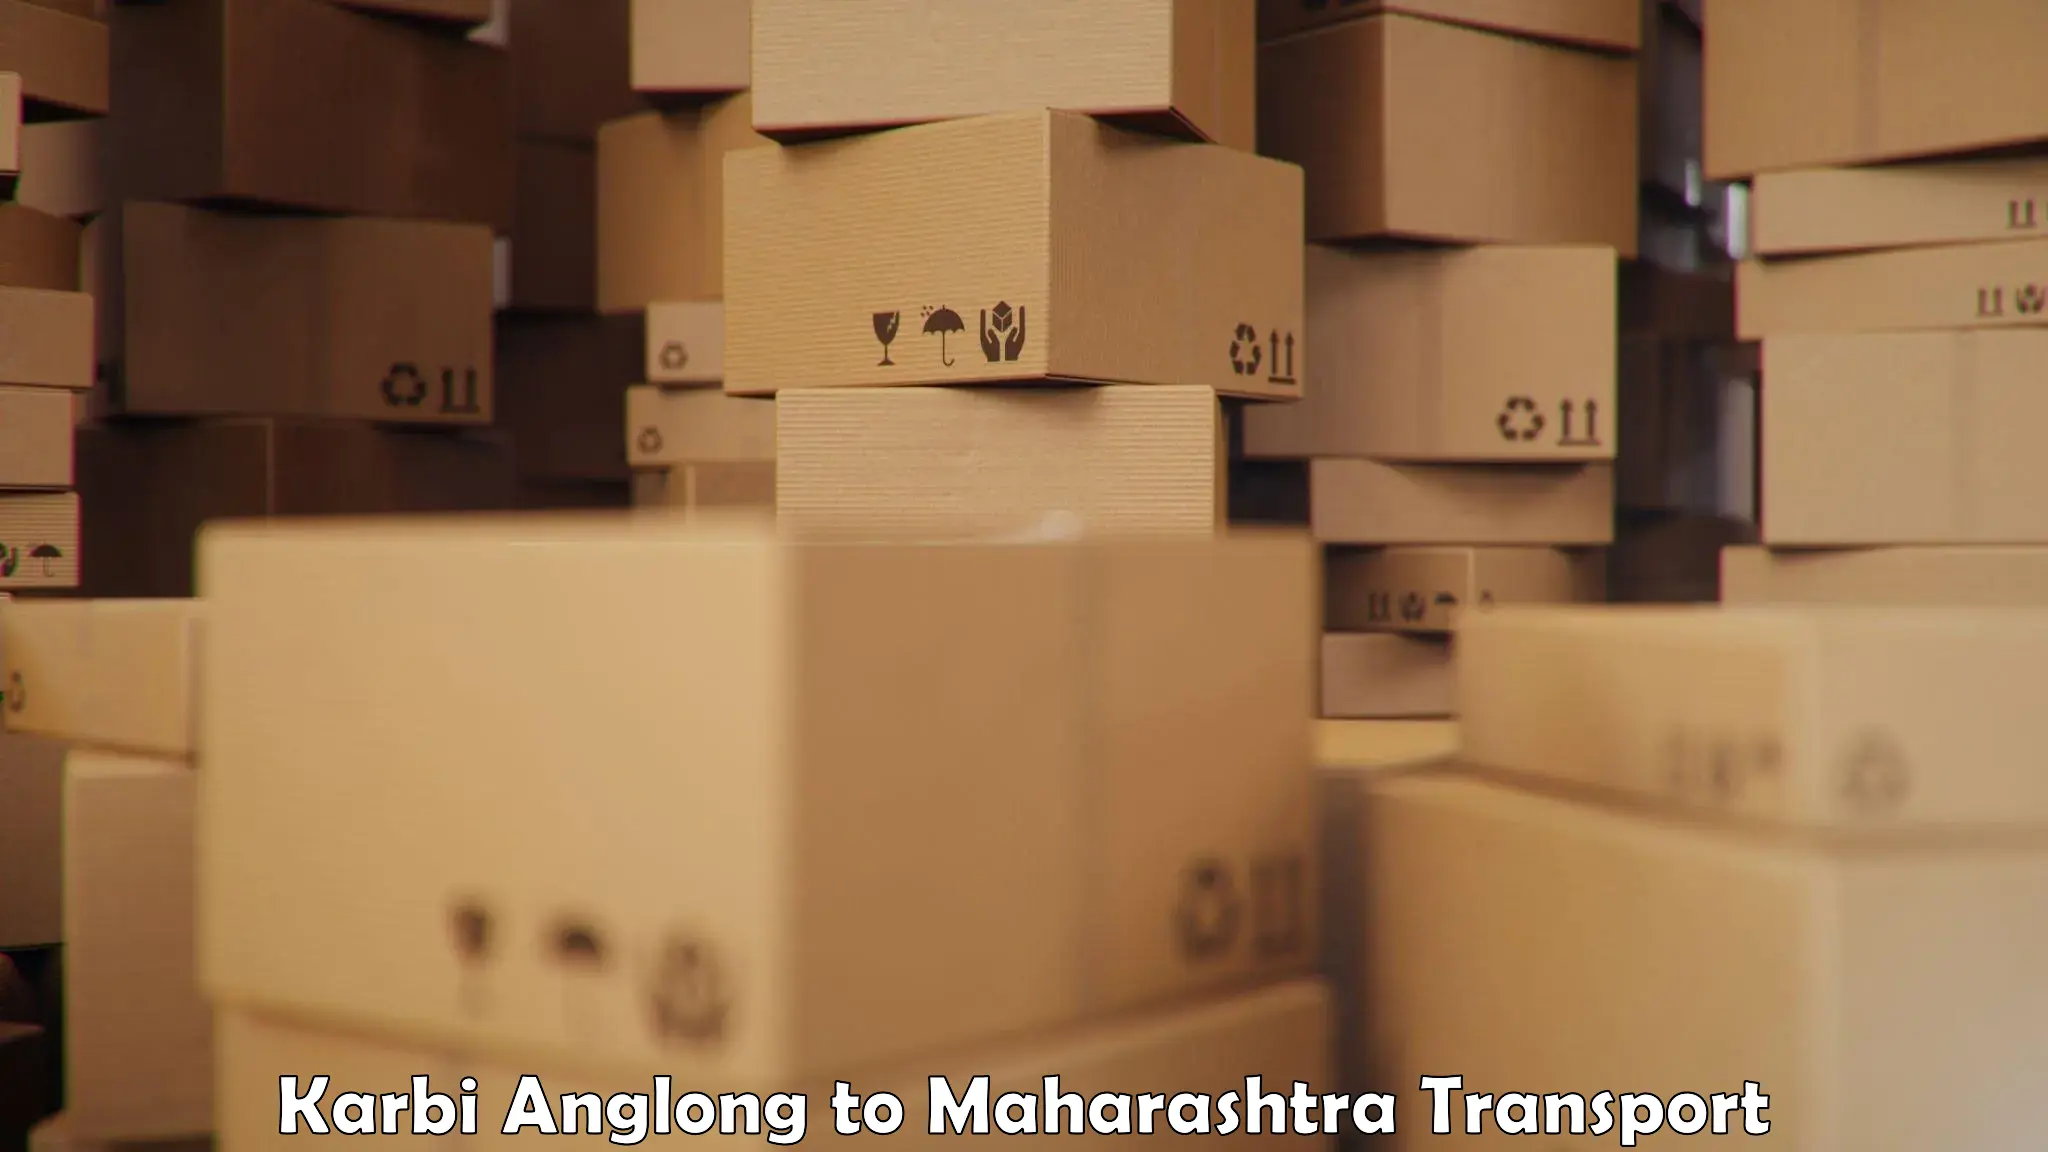 Logistics transportation services Karbi Anglong to IIT Mumbai